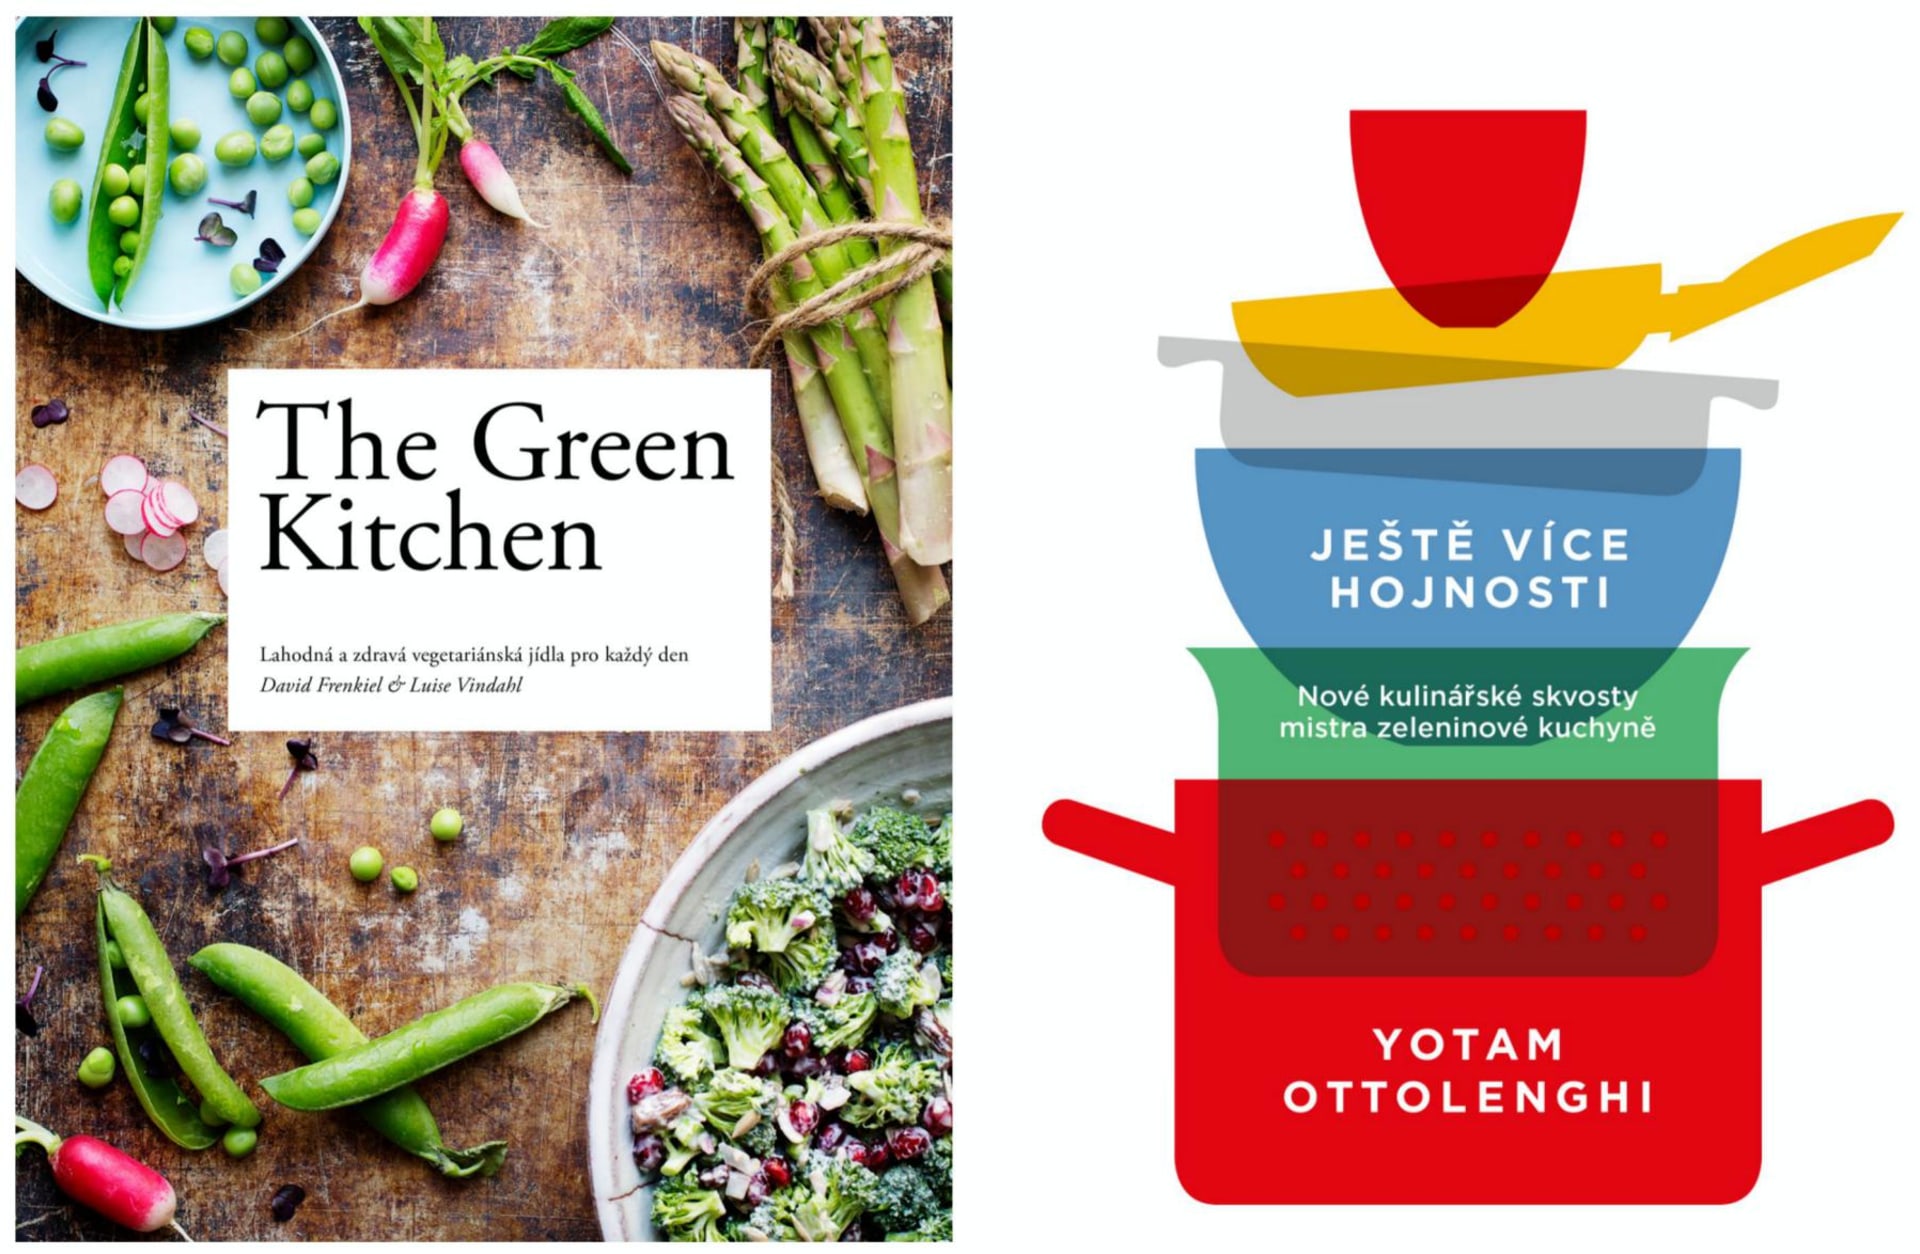 The Green Kitchen, Ještě více hojnosti